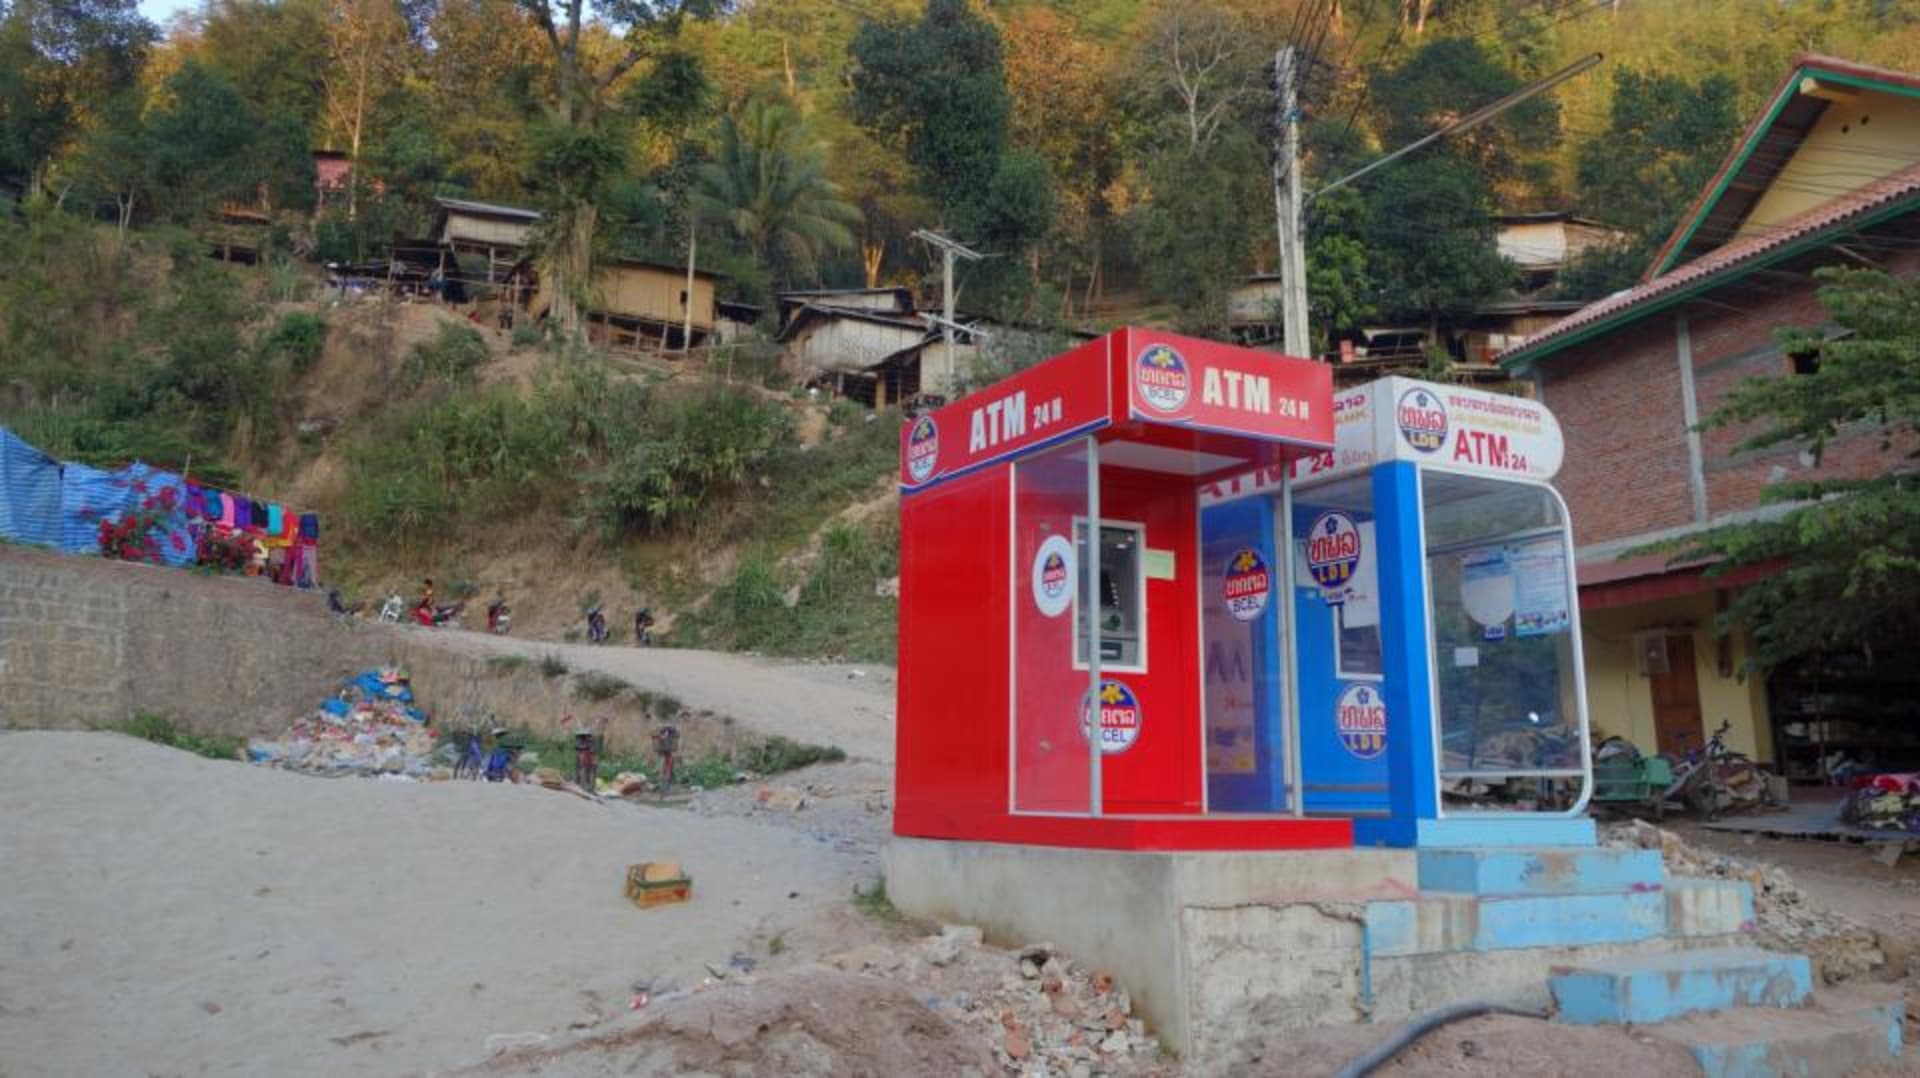 Bankomaty jsou základ. Laos